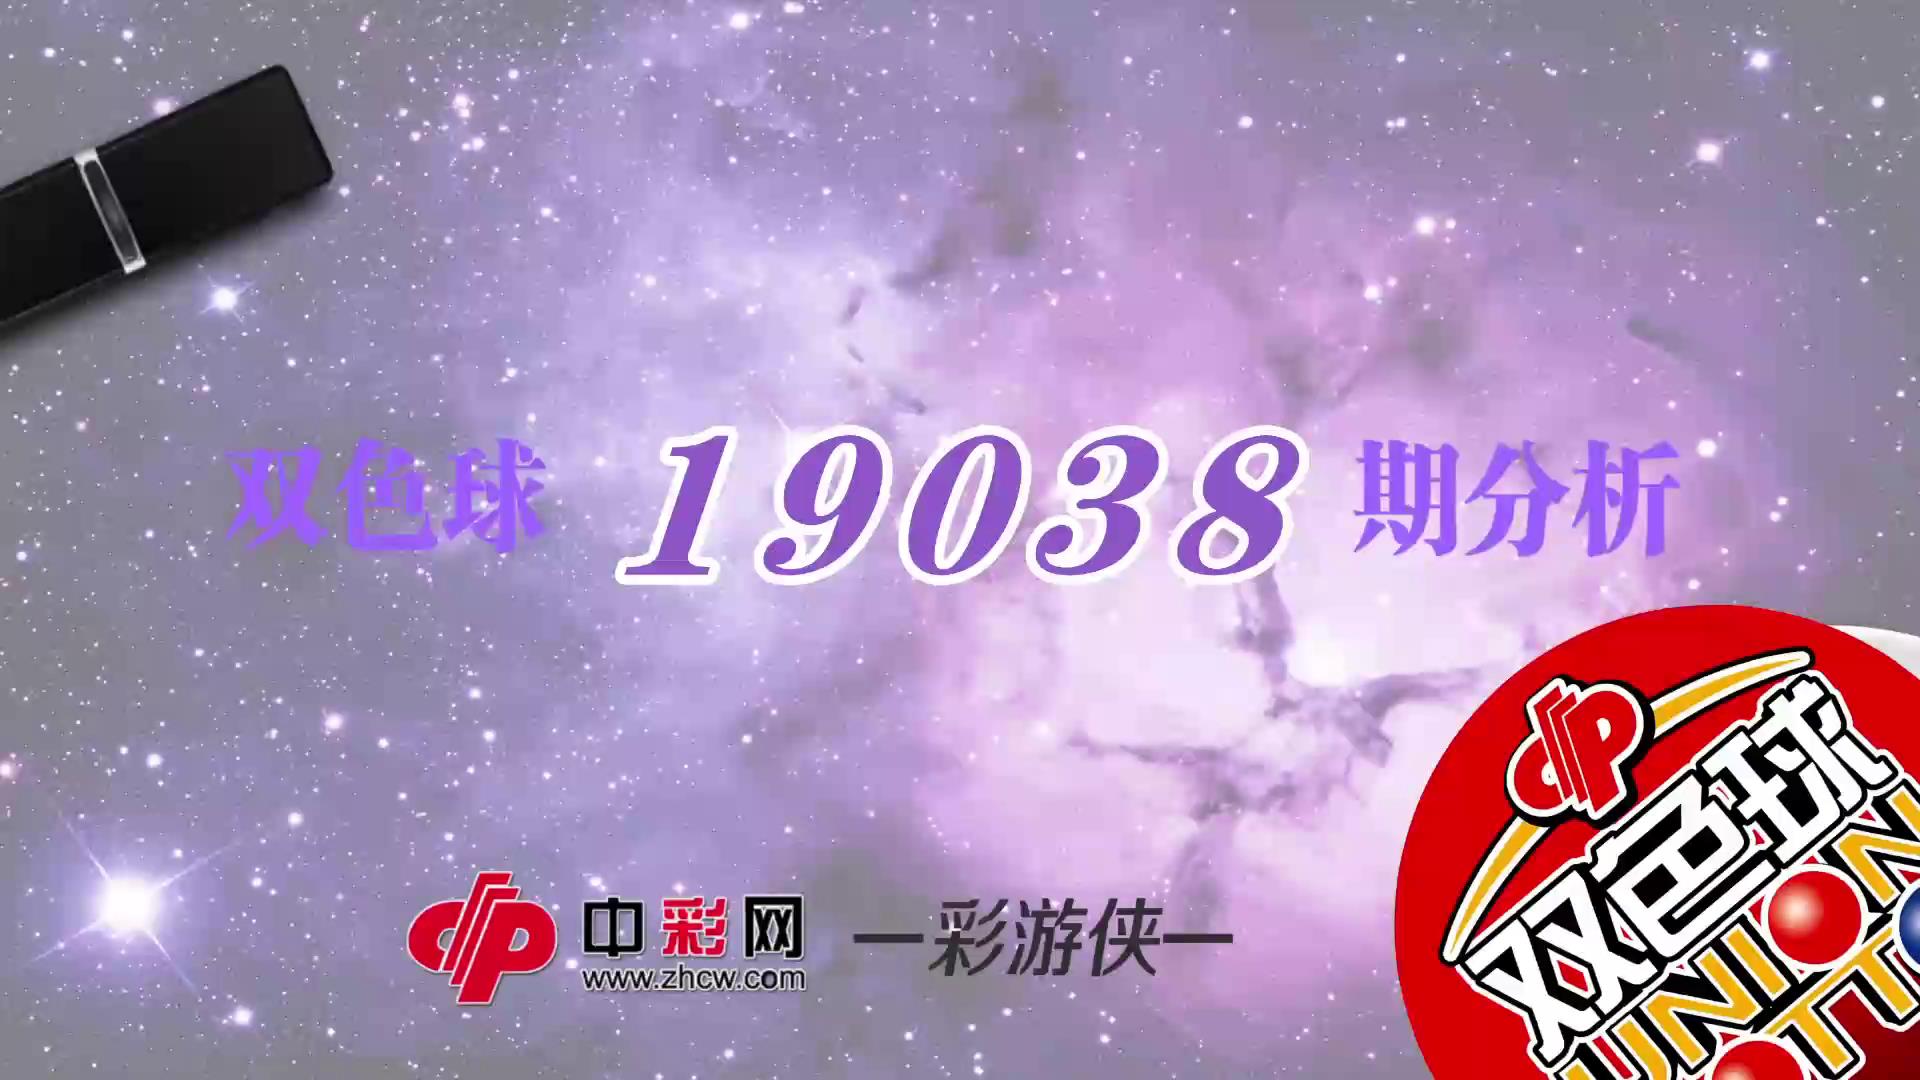 【中彩视频】彩游侠双色球第19038期